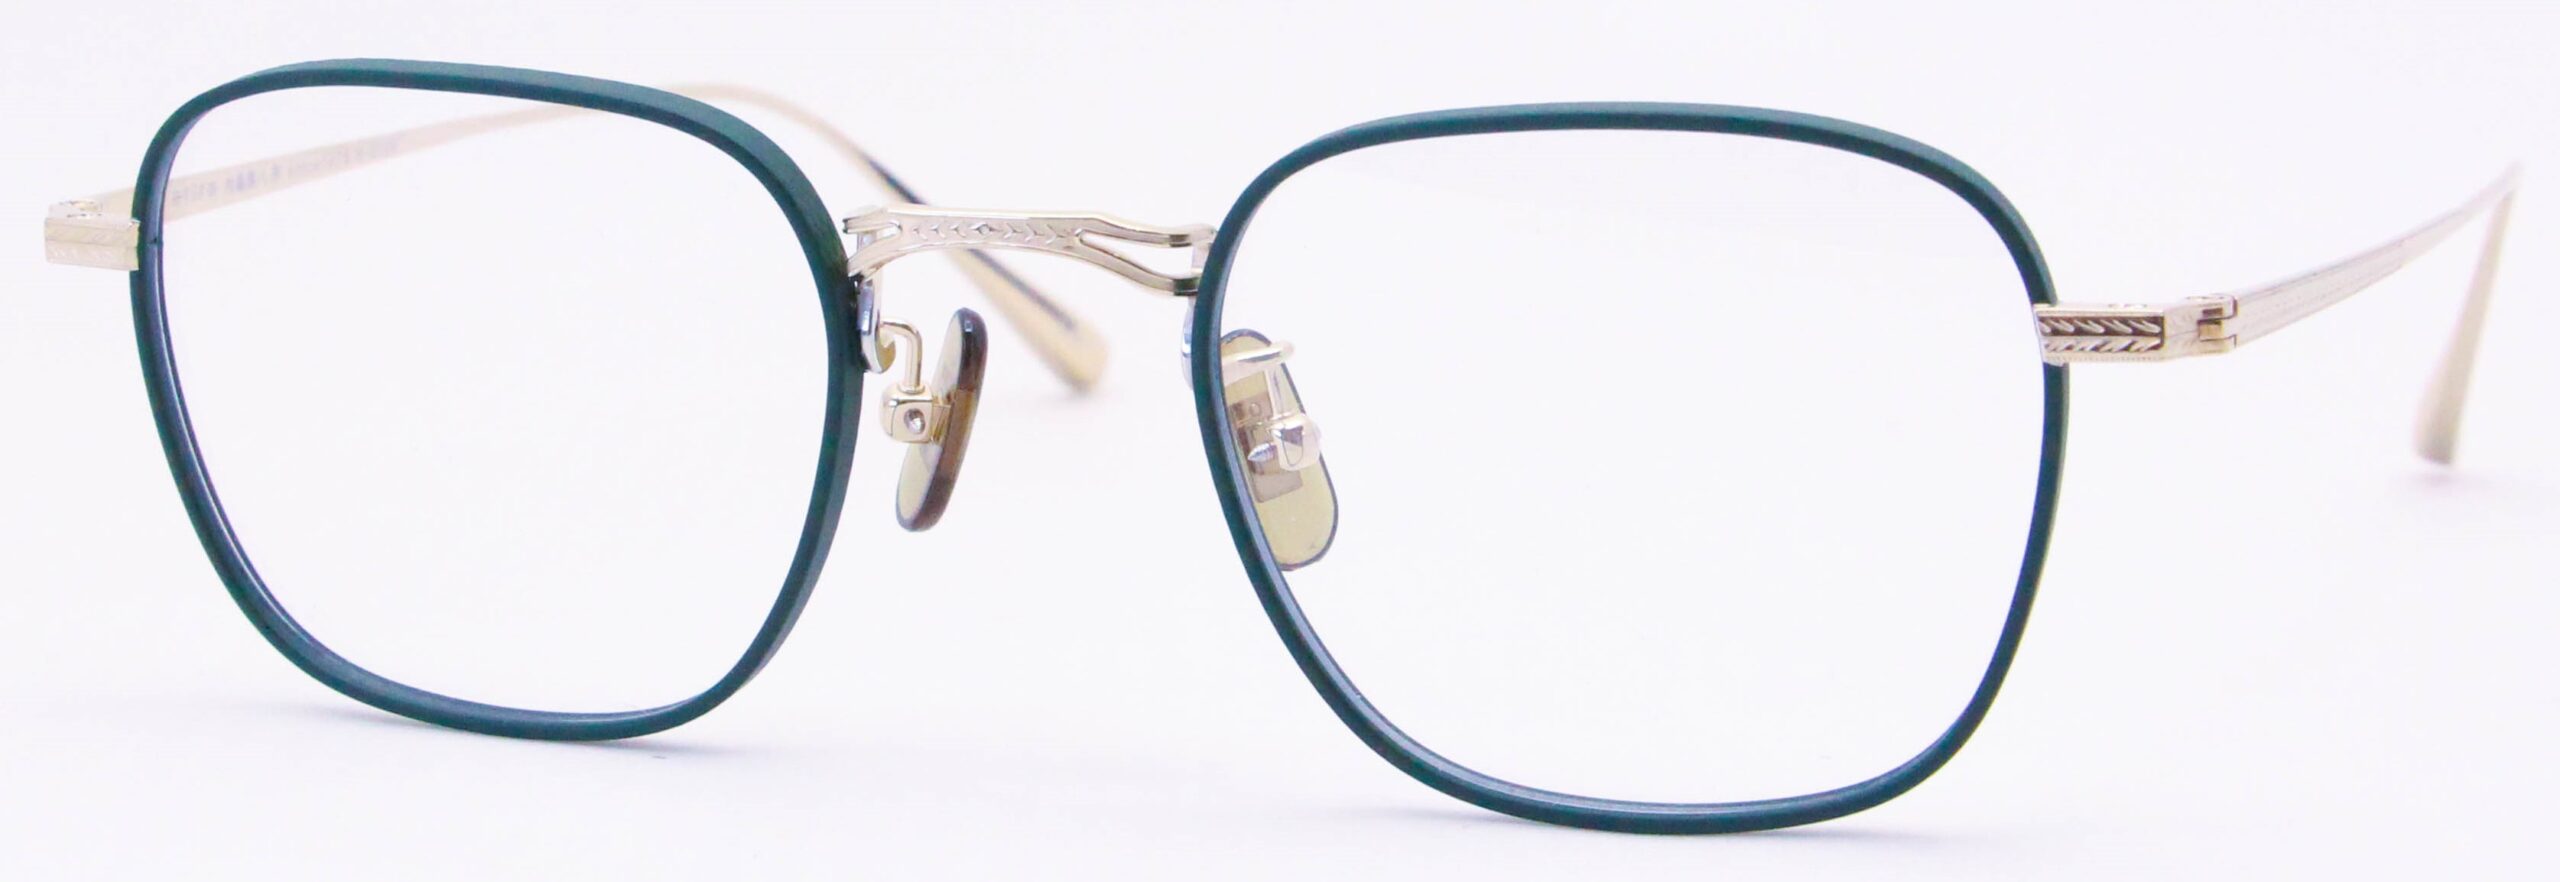 眼鏡のカラータイプC-5 Green-Matt/Gold